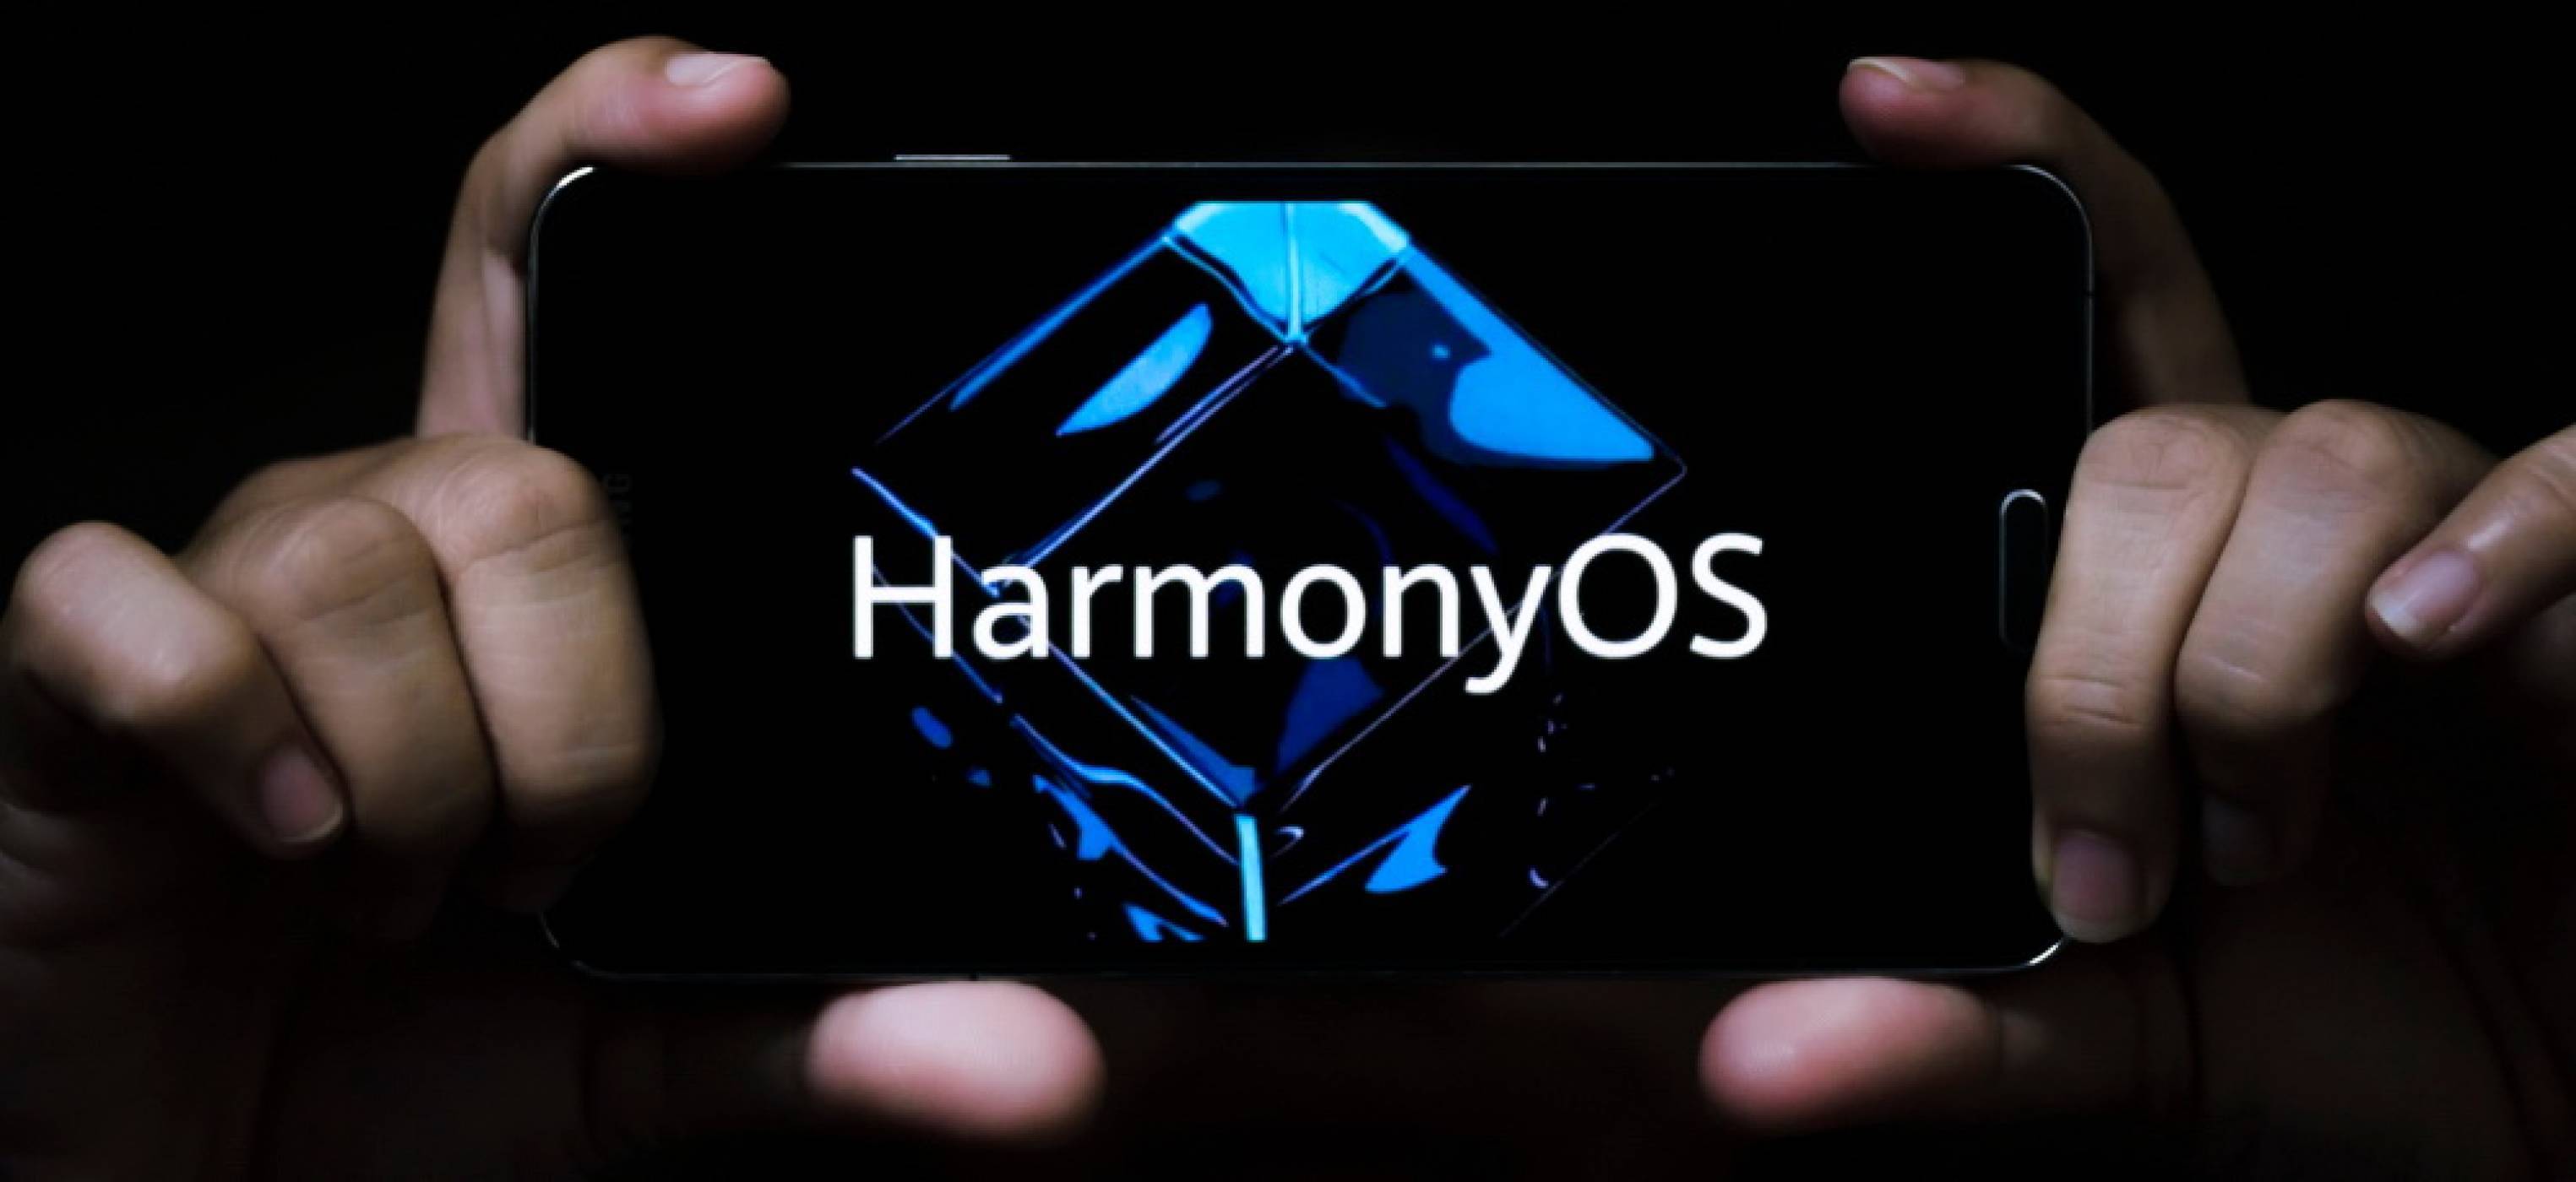 Harmony OS – за новата операционна система на Huawei и има ли защо да се притесняват Google? част 2